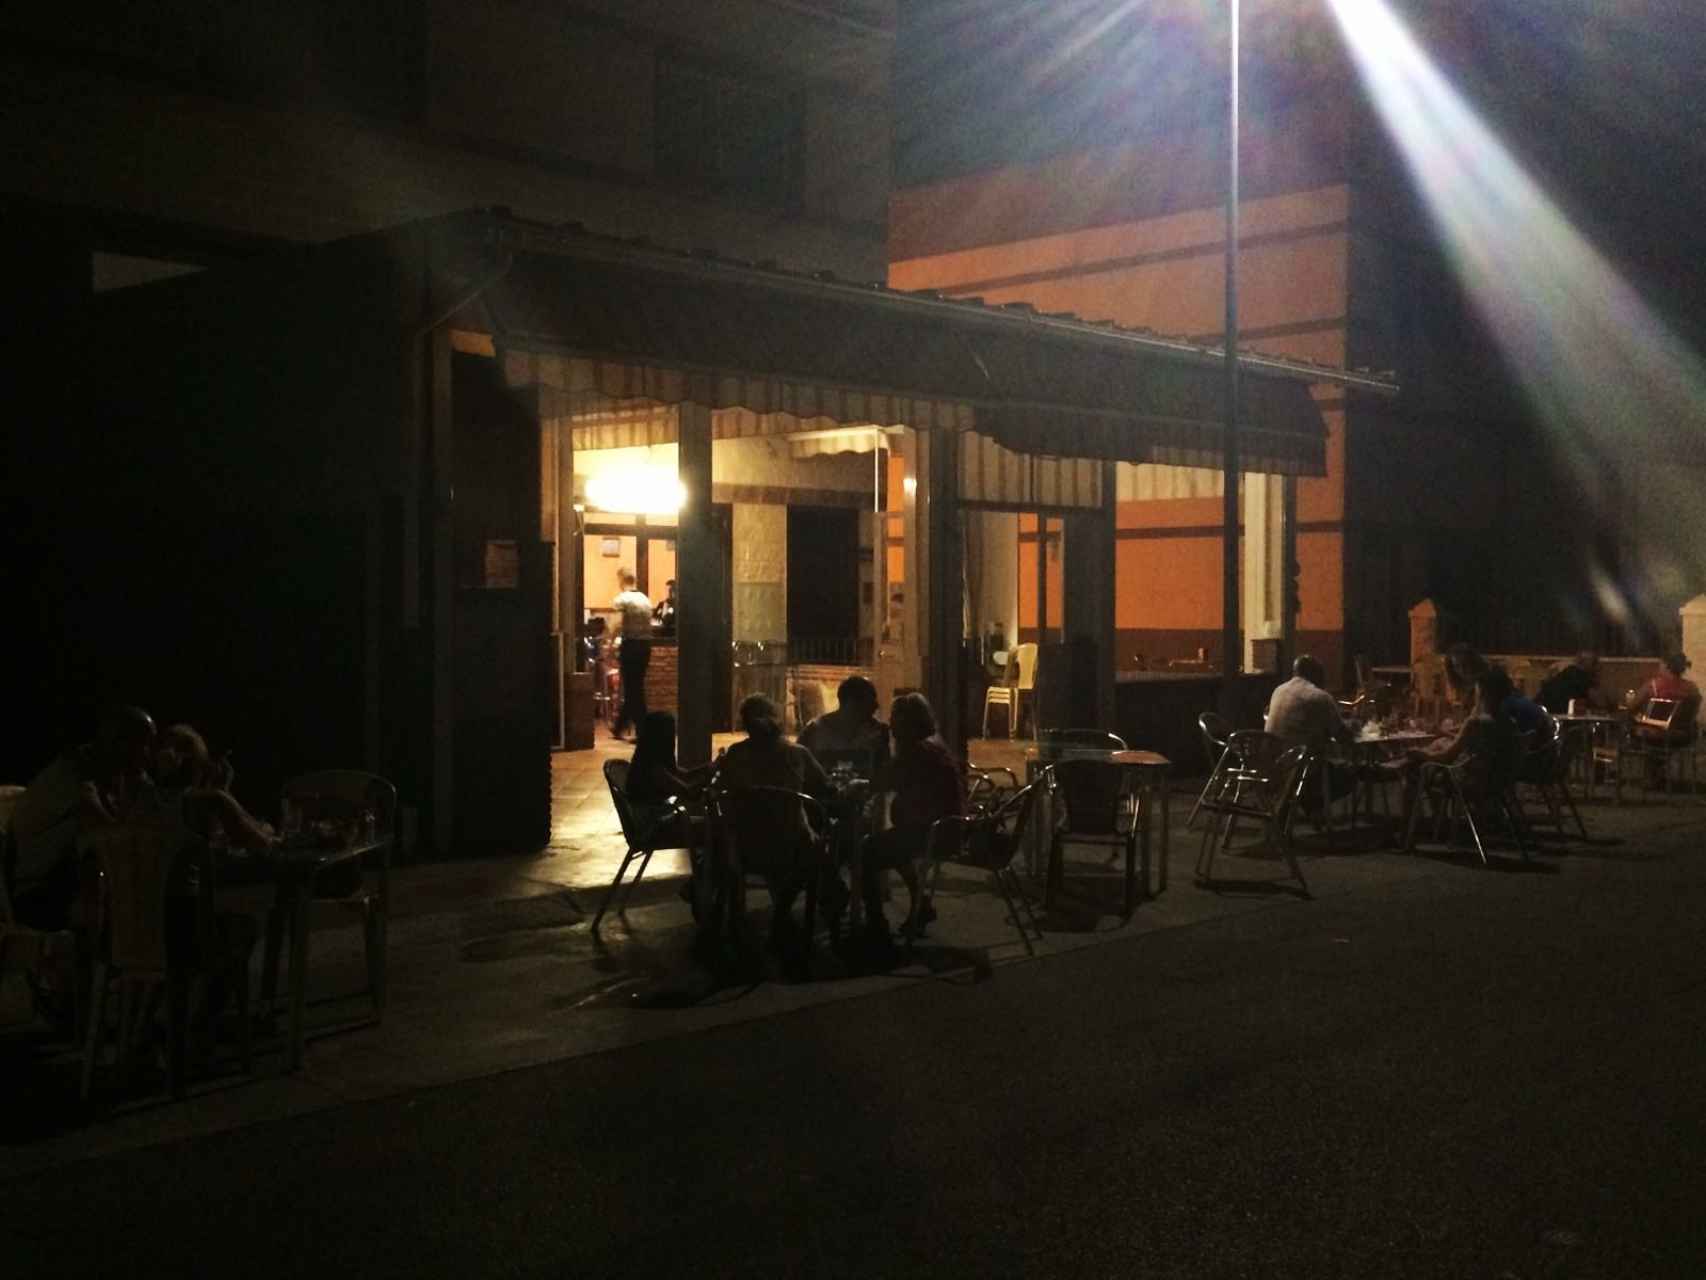 Aquella noche había 160 personas en el bar El Rincón del Mohíno, que había extendido decenas de mesas junto a la carretera que discurre pegada a las vías del tren.